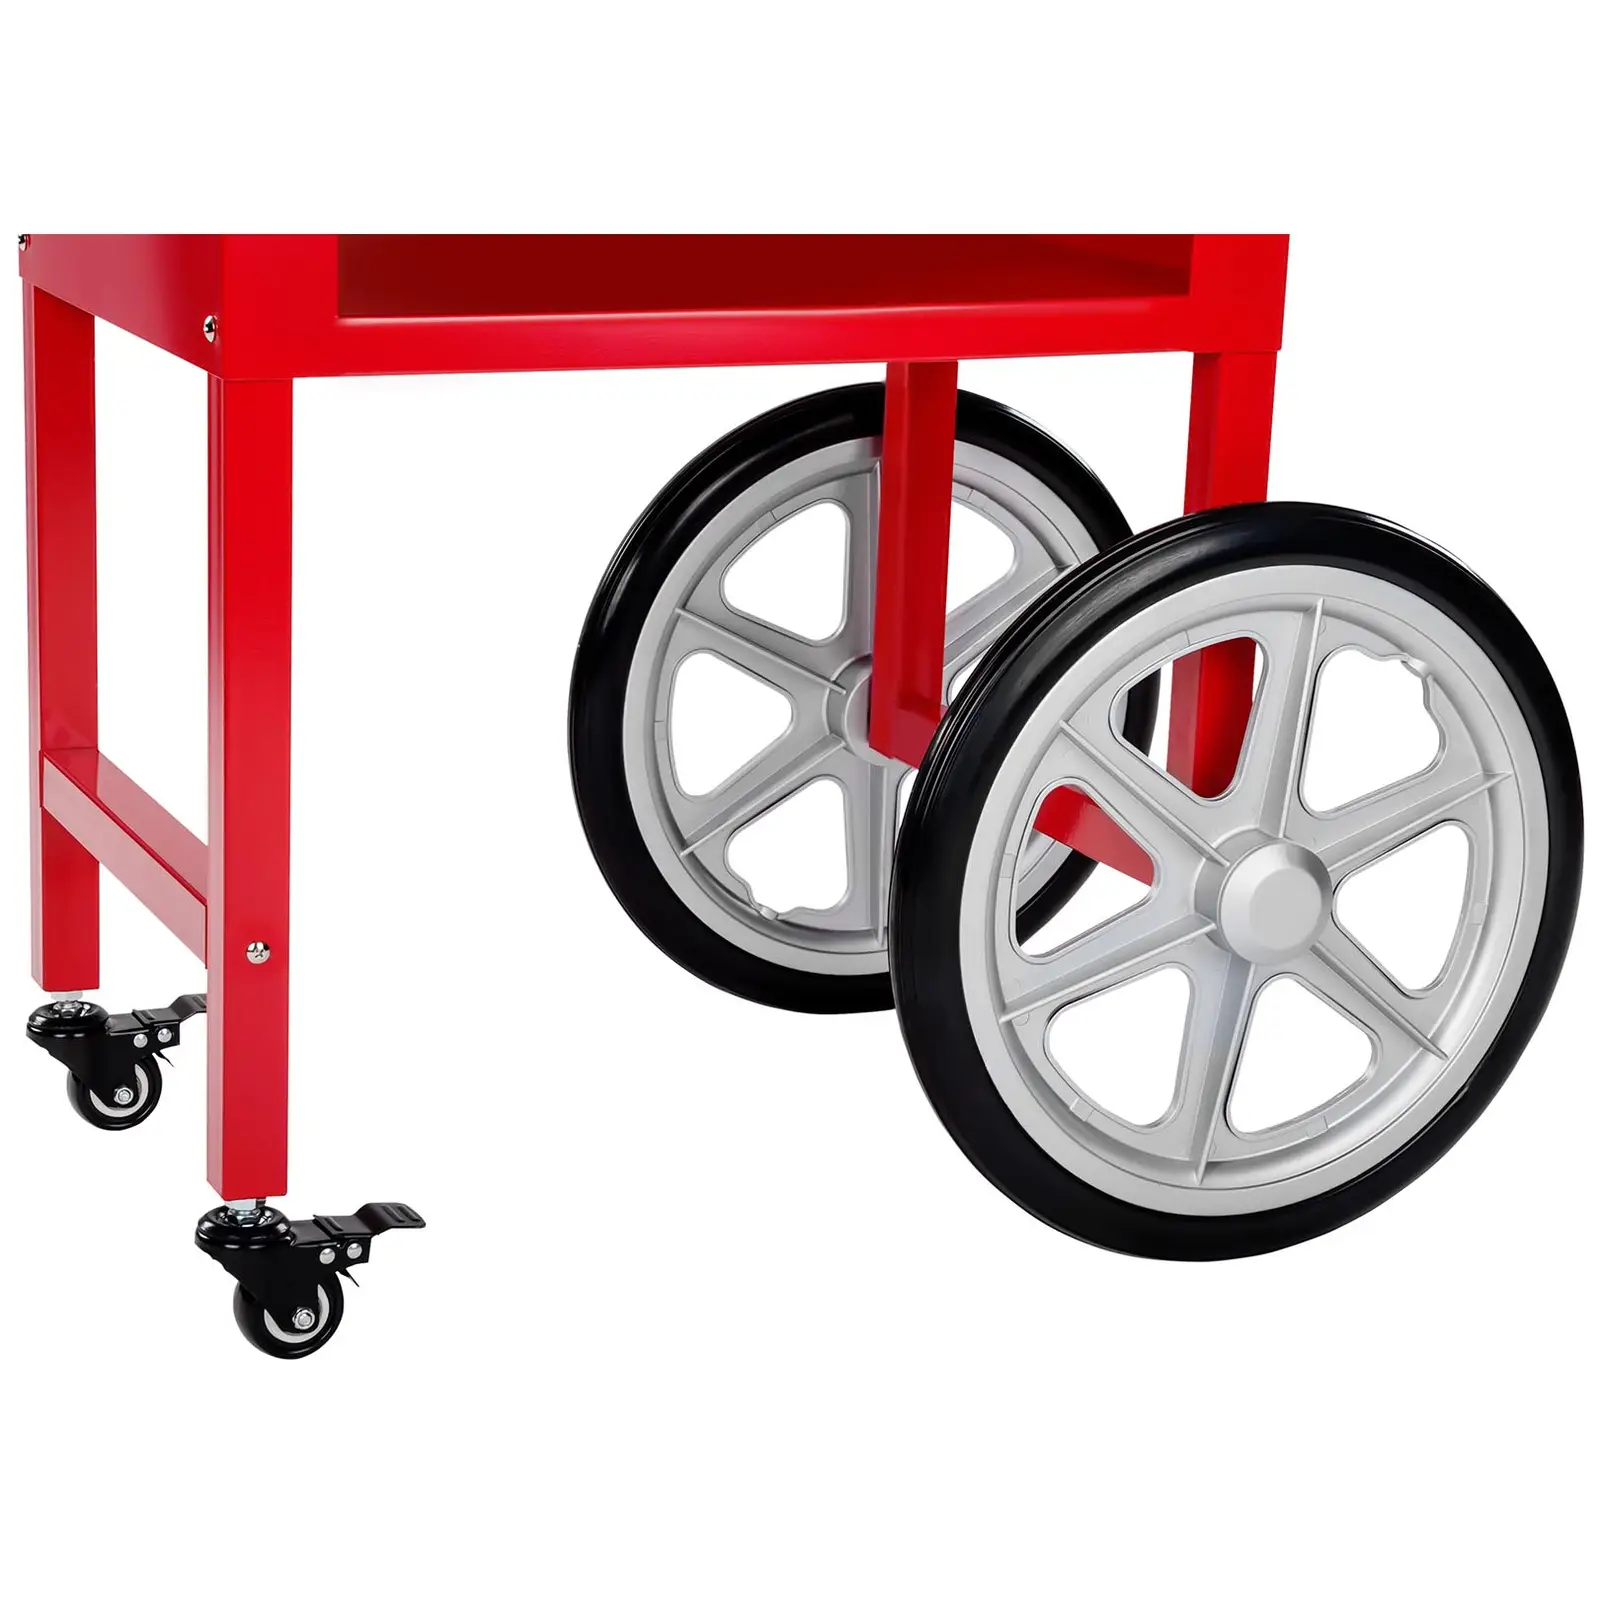 Stroj na popkorn s vozíkem a LED osvětlením - USA design - červený